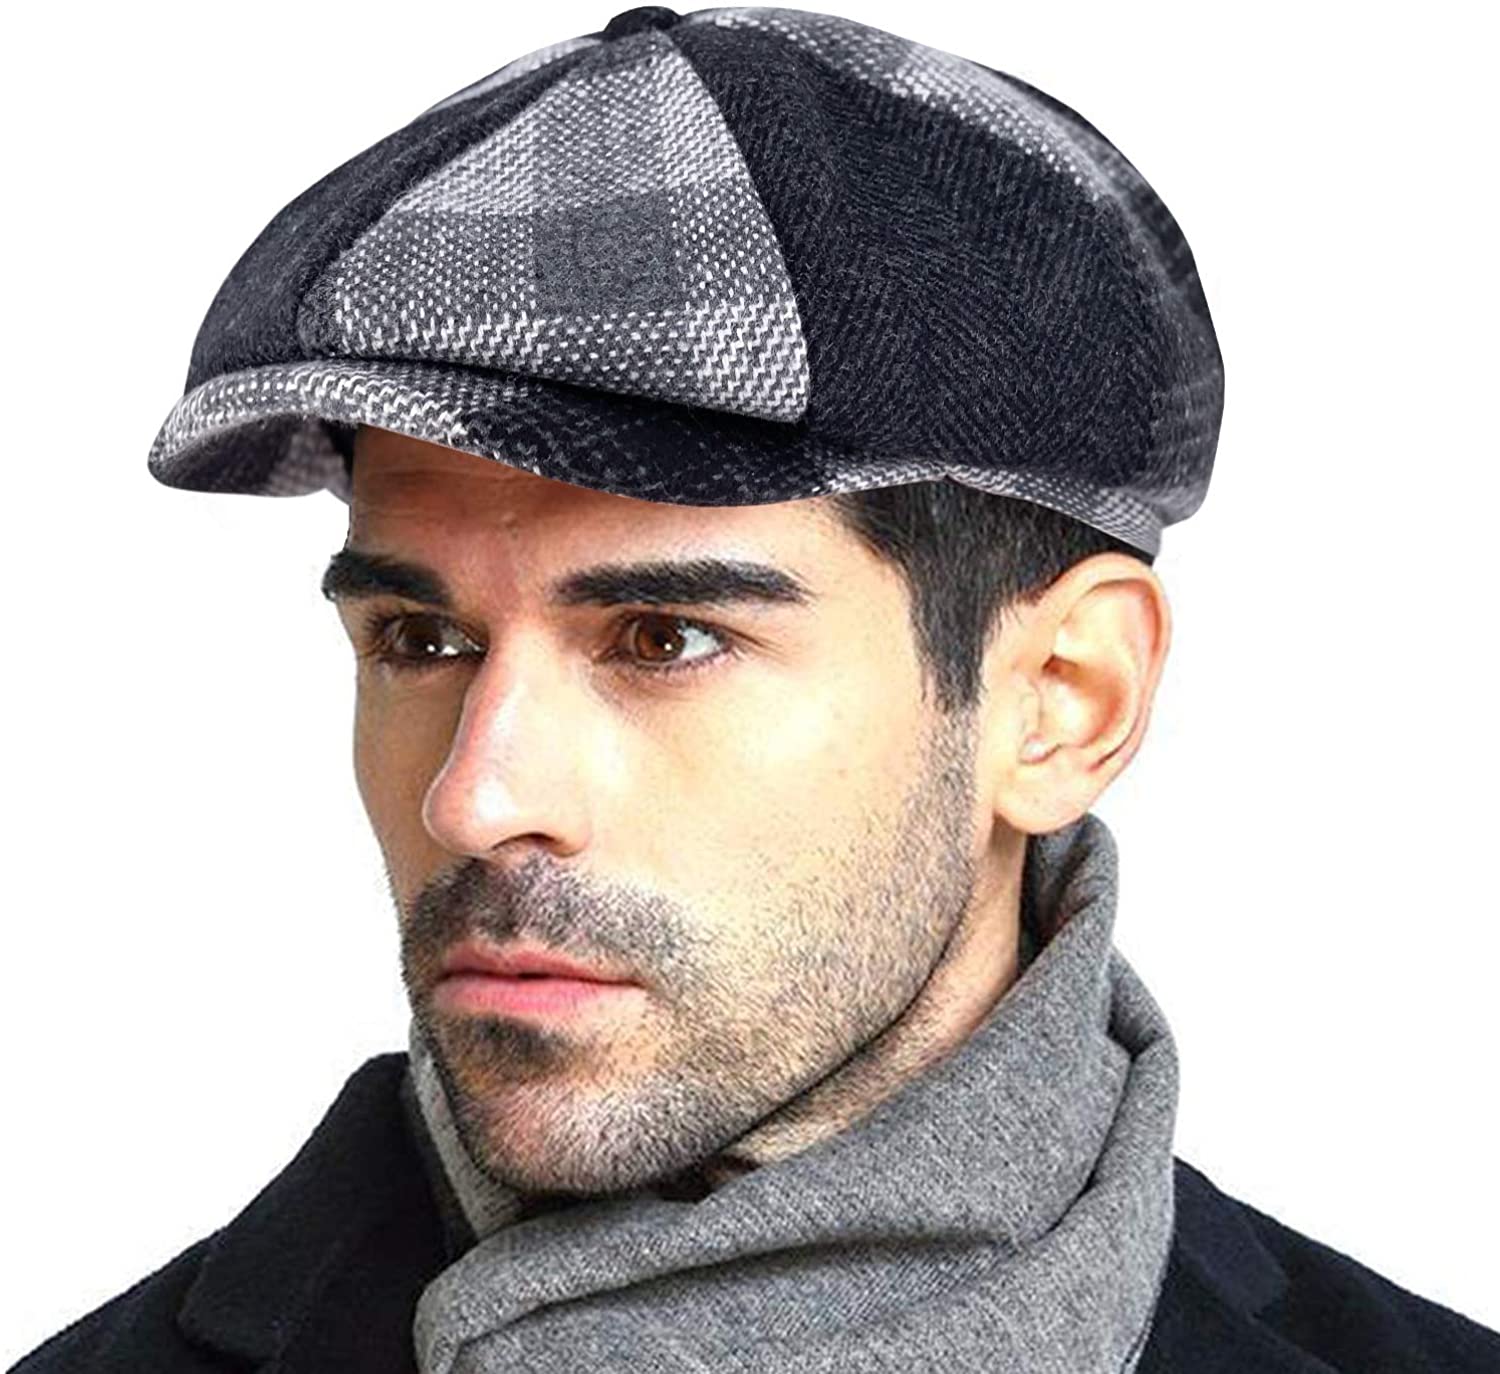 0円 うのにもお得な 4 Pieces Newsboy Hats for Men Cabbie Cap Flat CapIvy Gatsby Hunting Hat Novel Style Classic